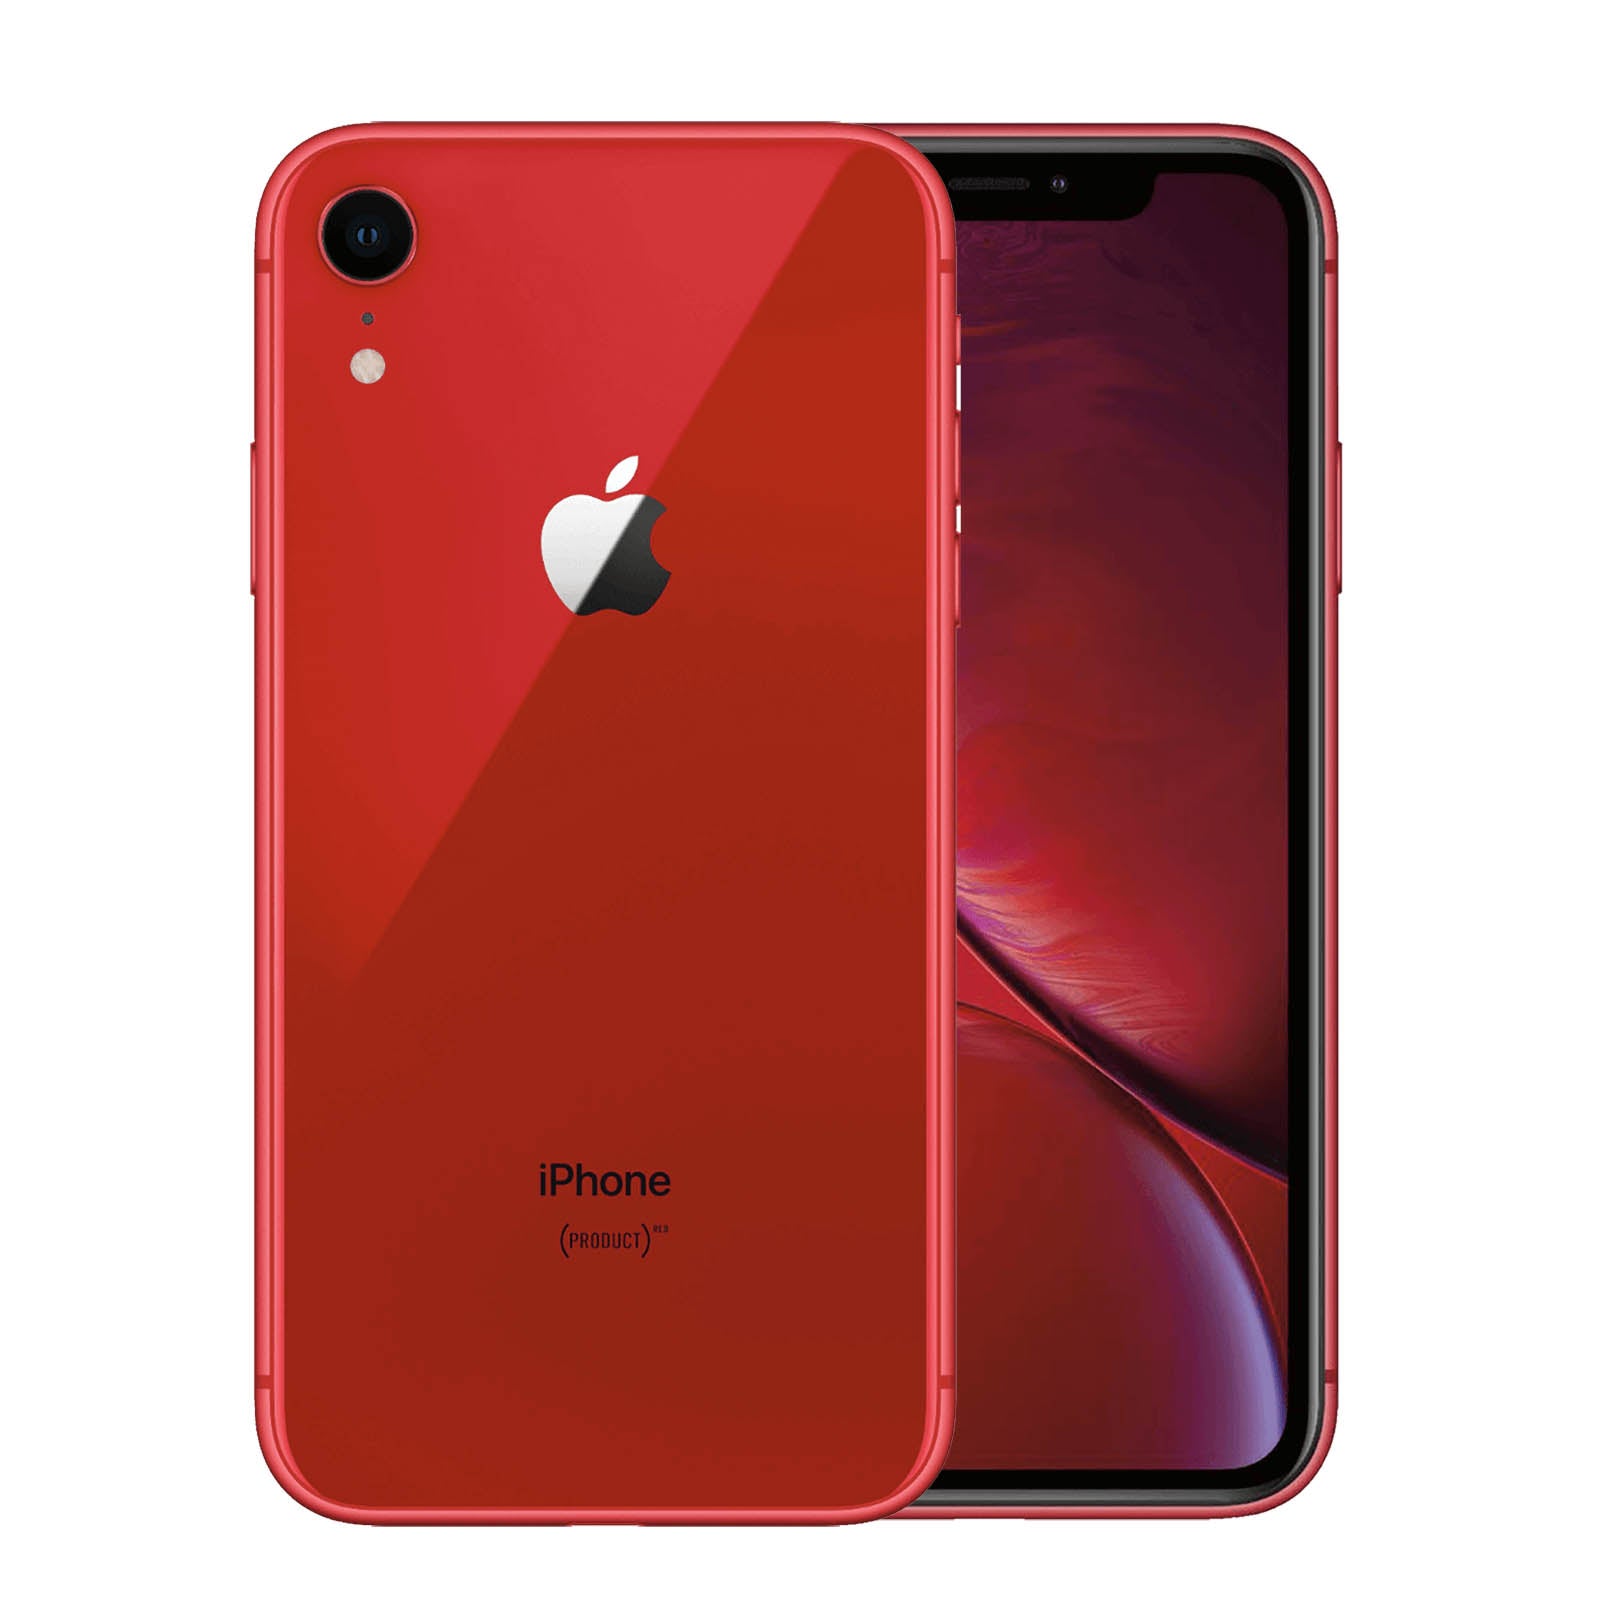 Apple iPhone XR 64GB - Red – Loop Mobile - AU